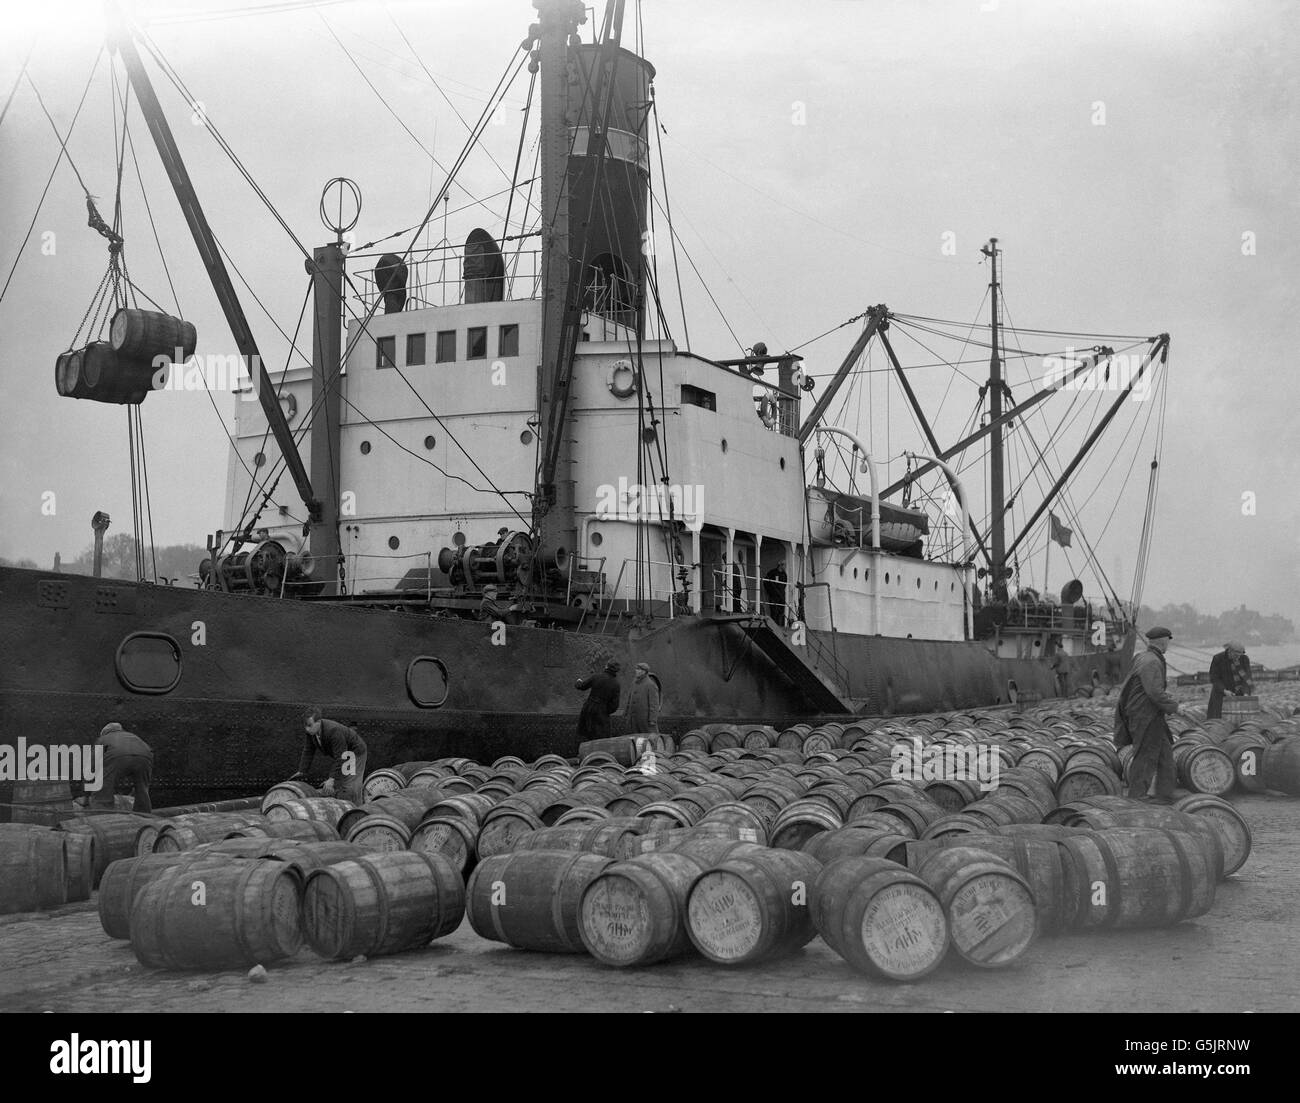 Les travailleurs britanniques des quais chargent 13,000 barils de harengs britanniques sur le navire soviétique KAMA, de Mourmansk, à Great Yarmouth, Norfolk. Les marins soviétiques n'ont pas participé au chargement. Banque D'Images